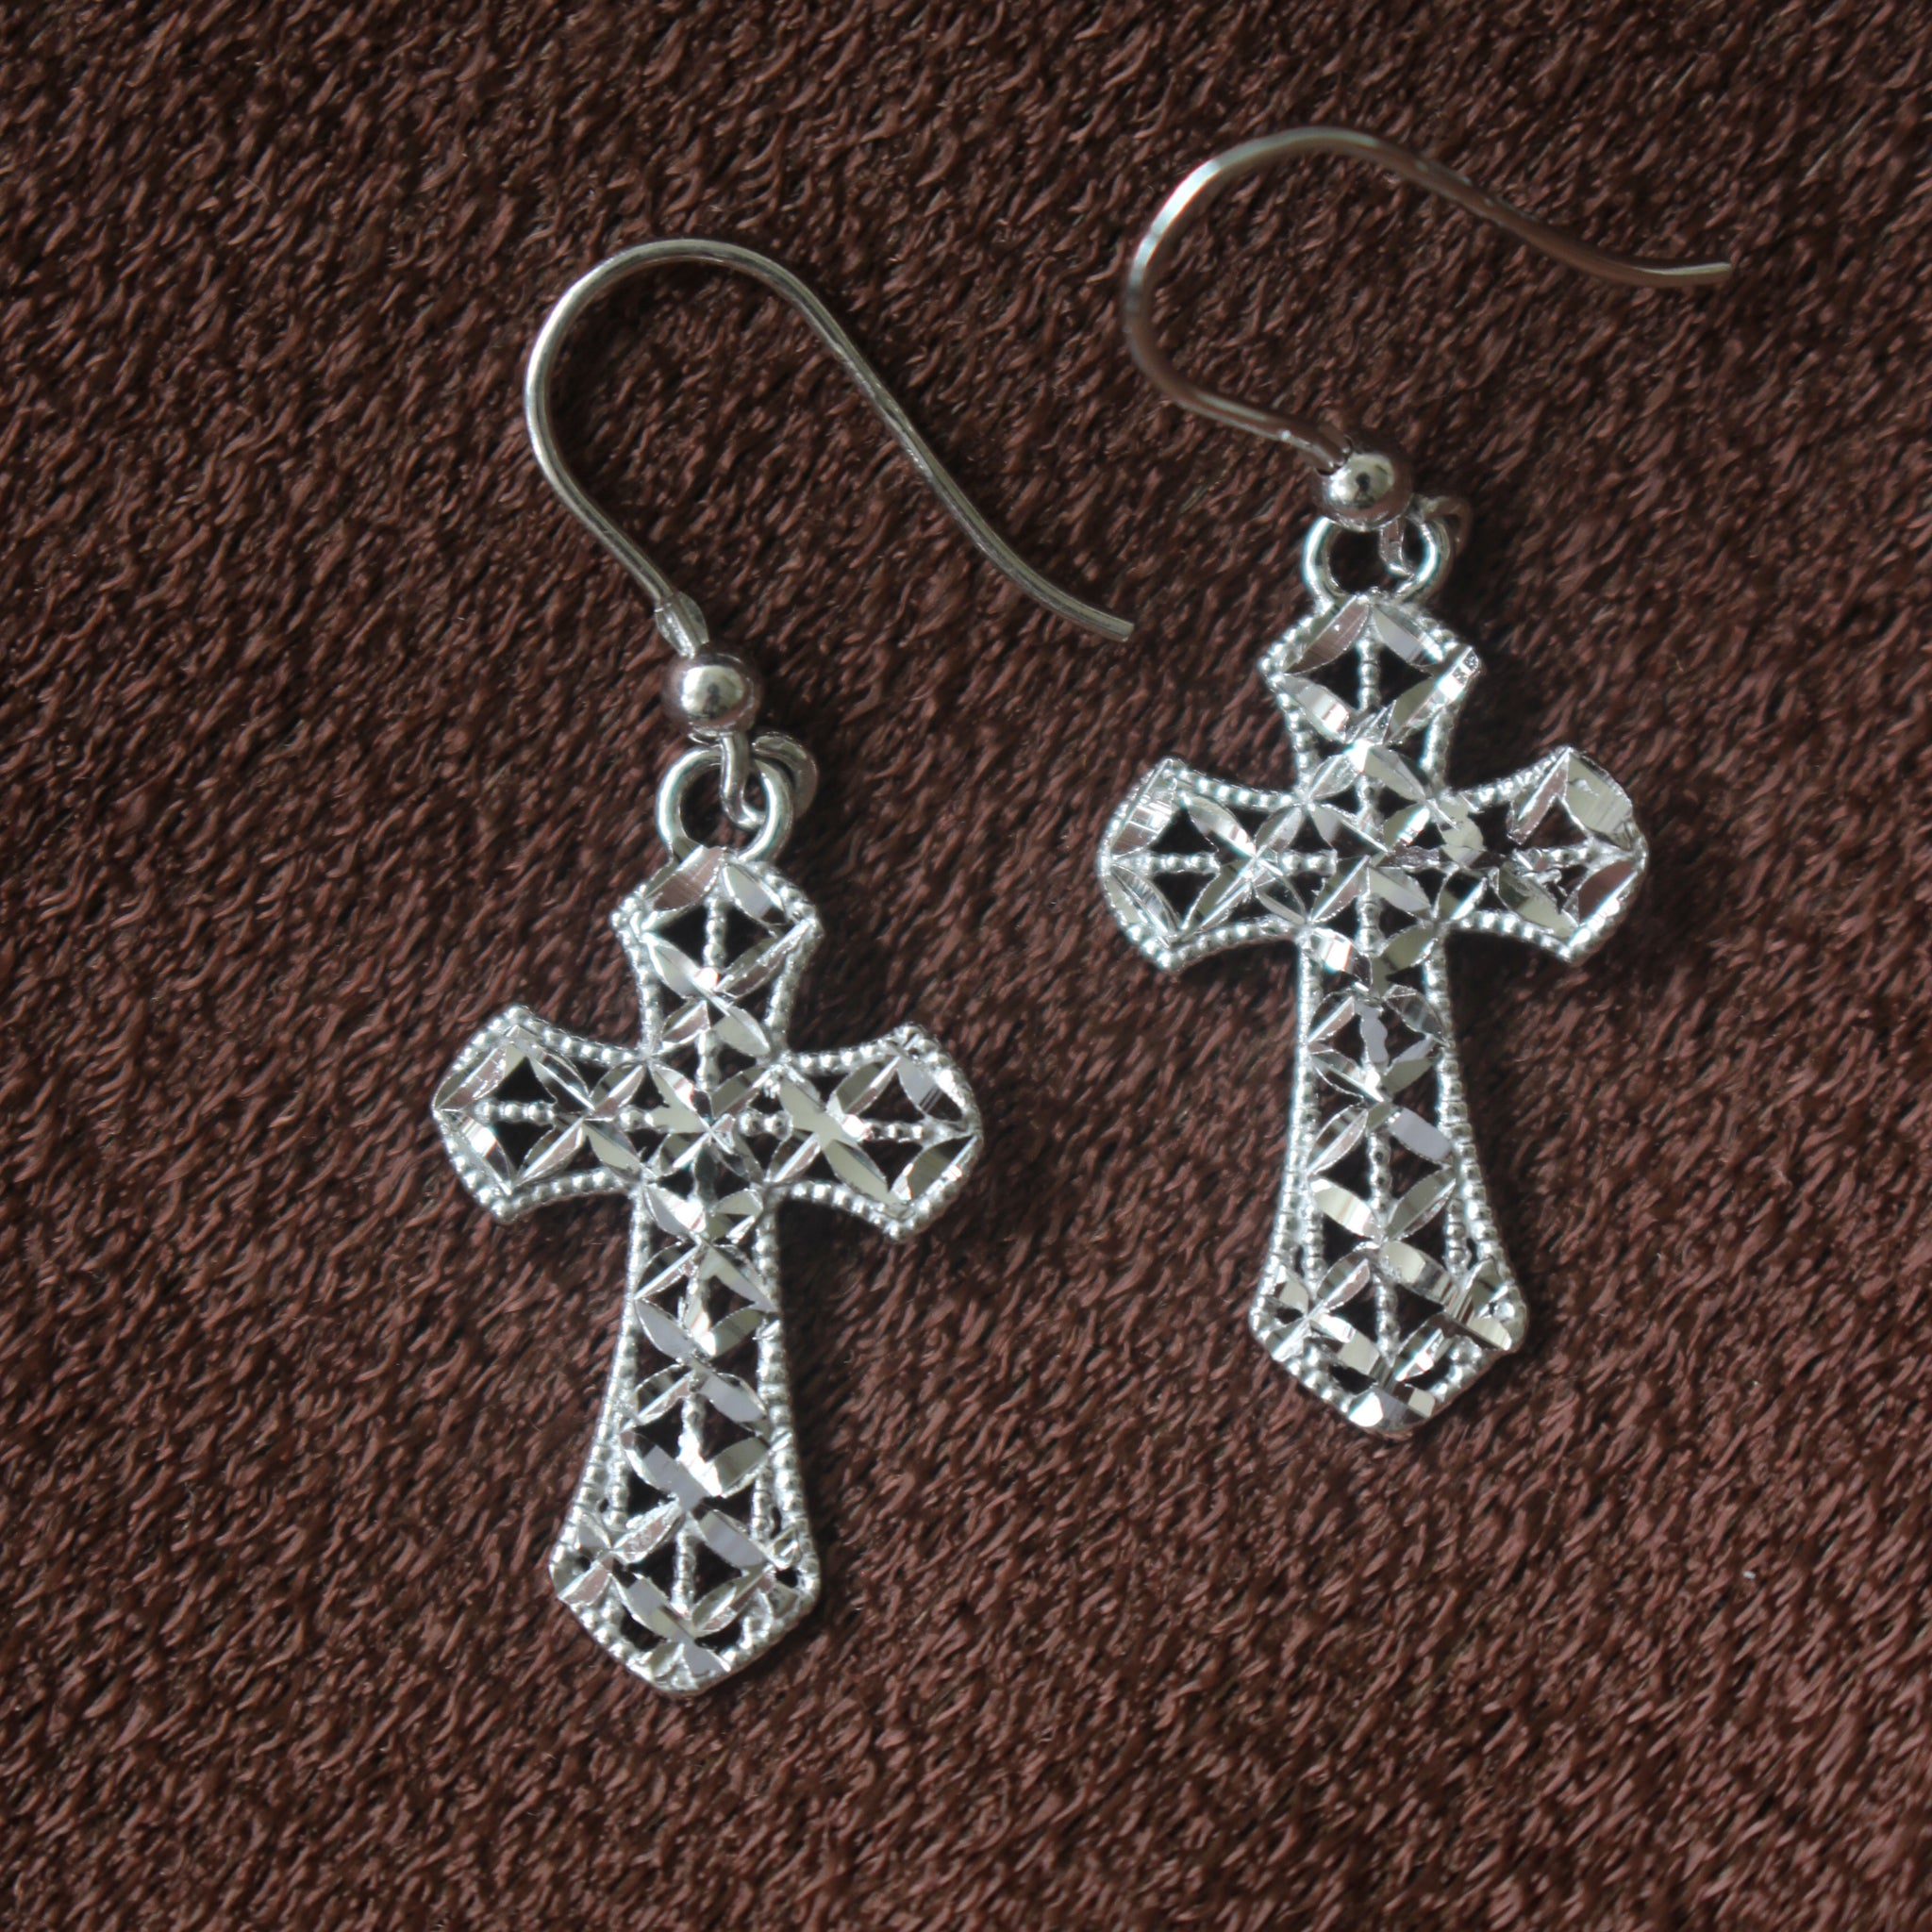 Cross Earrings - 925 Italian Silver Filigree Cross Earrings